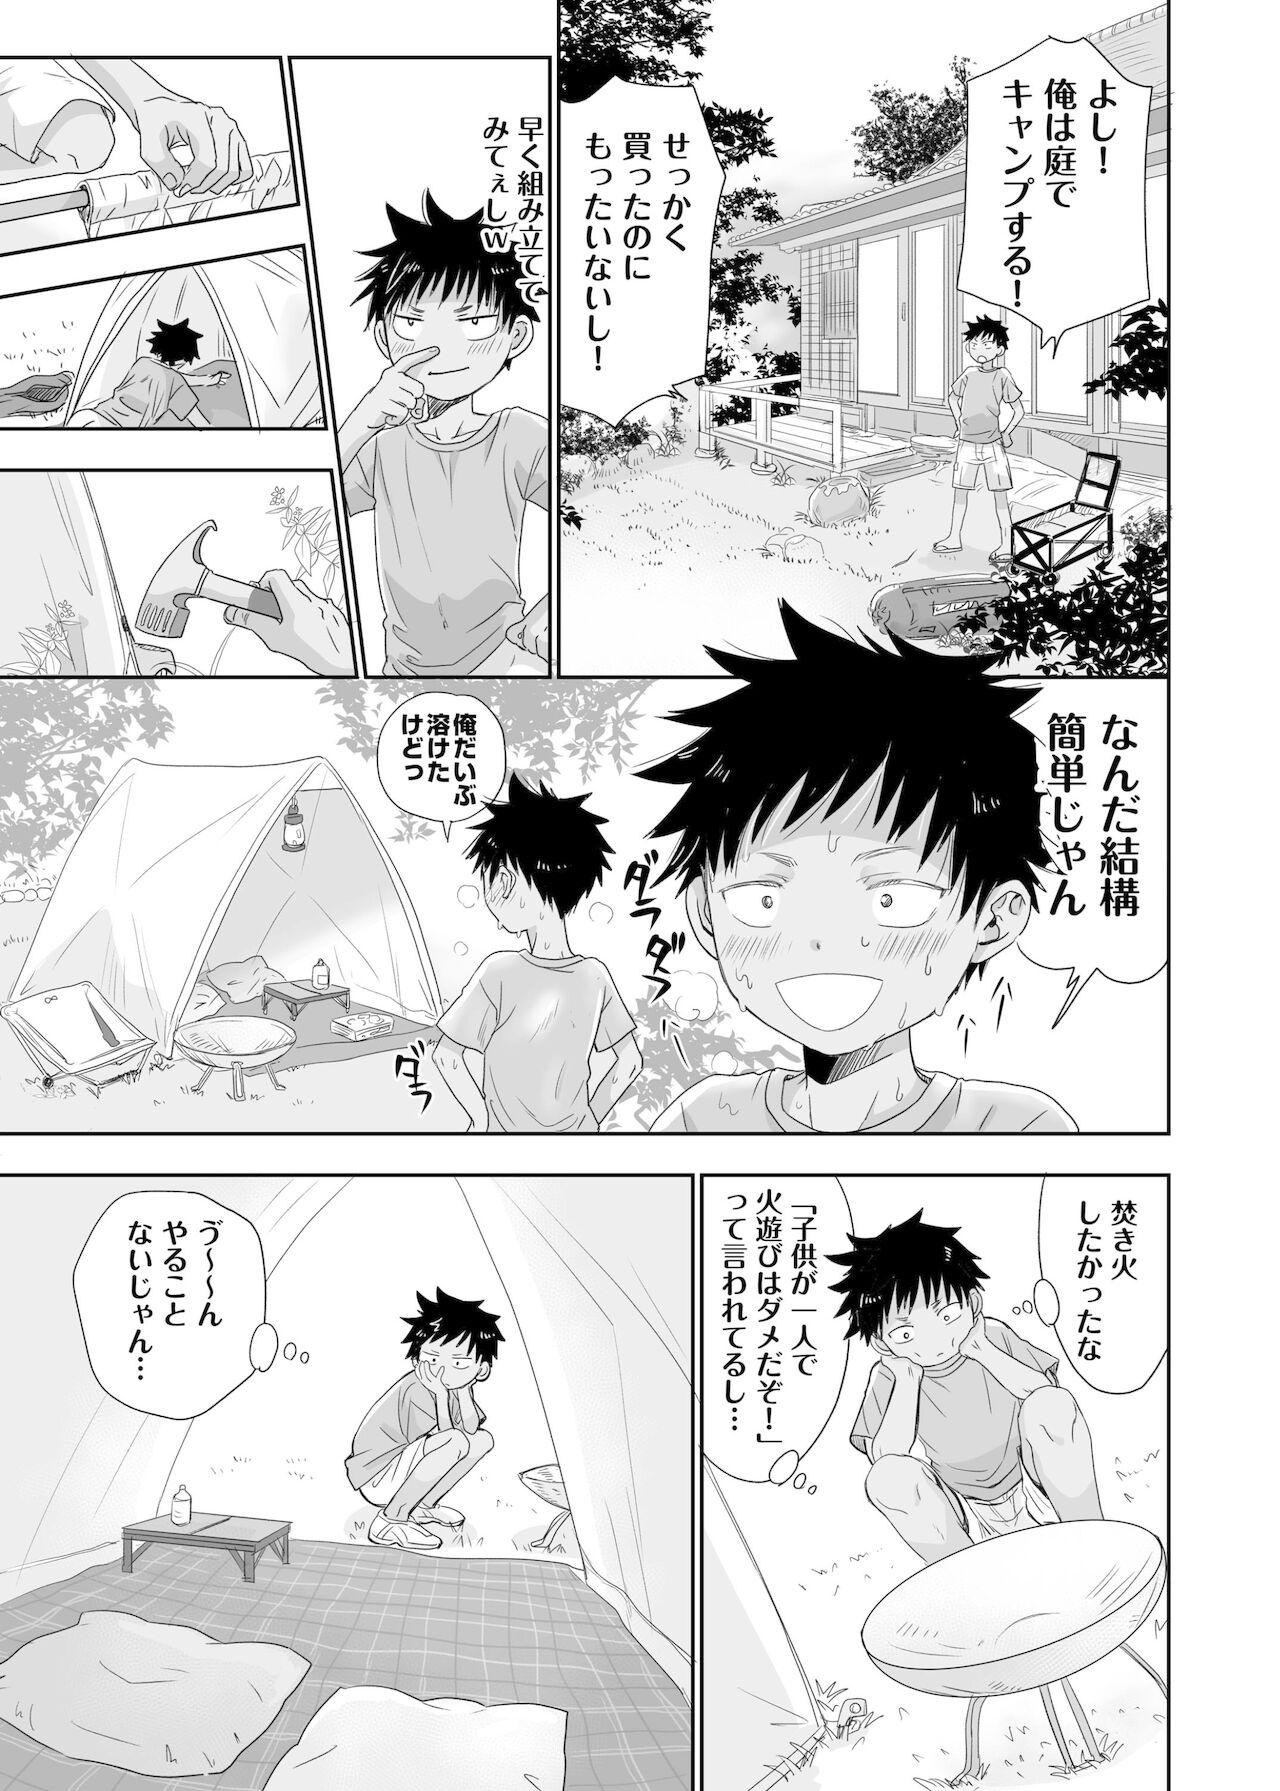 Lick Tonari no oniisan no Karada ga sugokute ki ni naru. Workout - Page 7